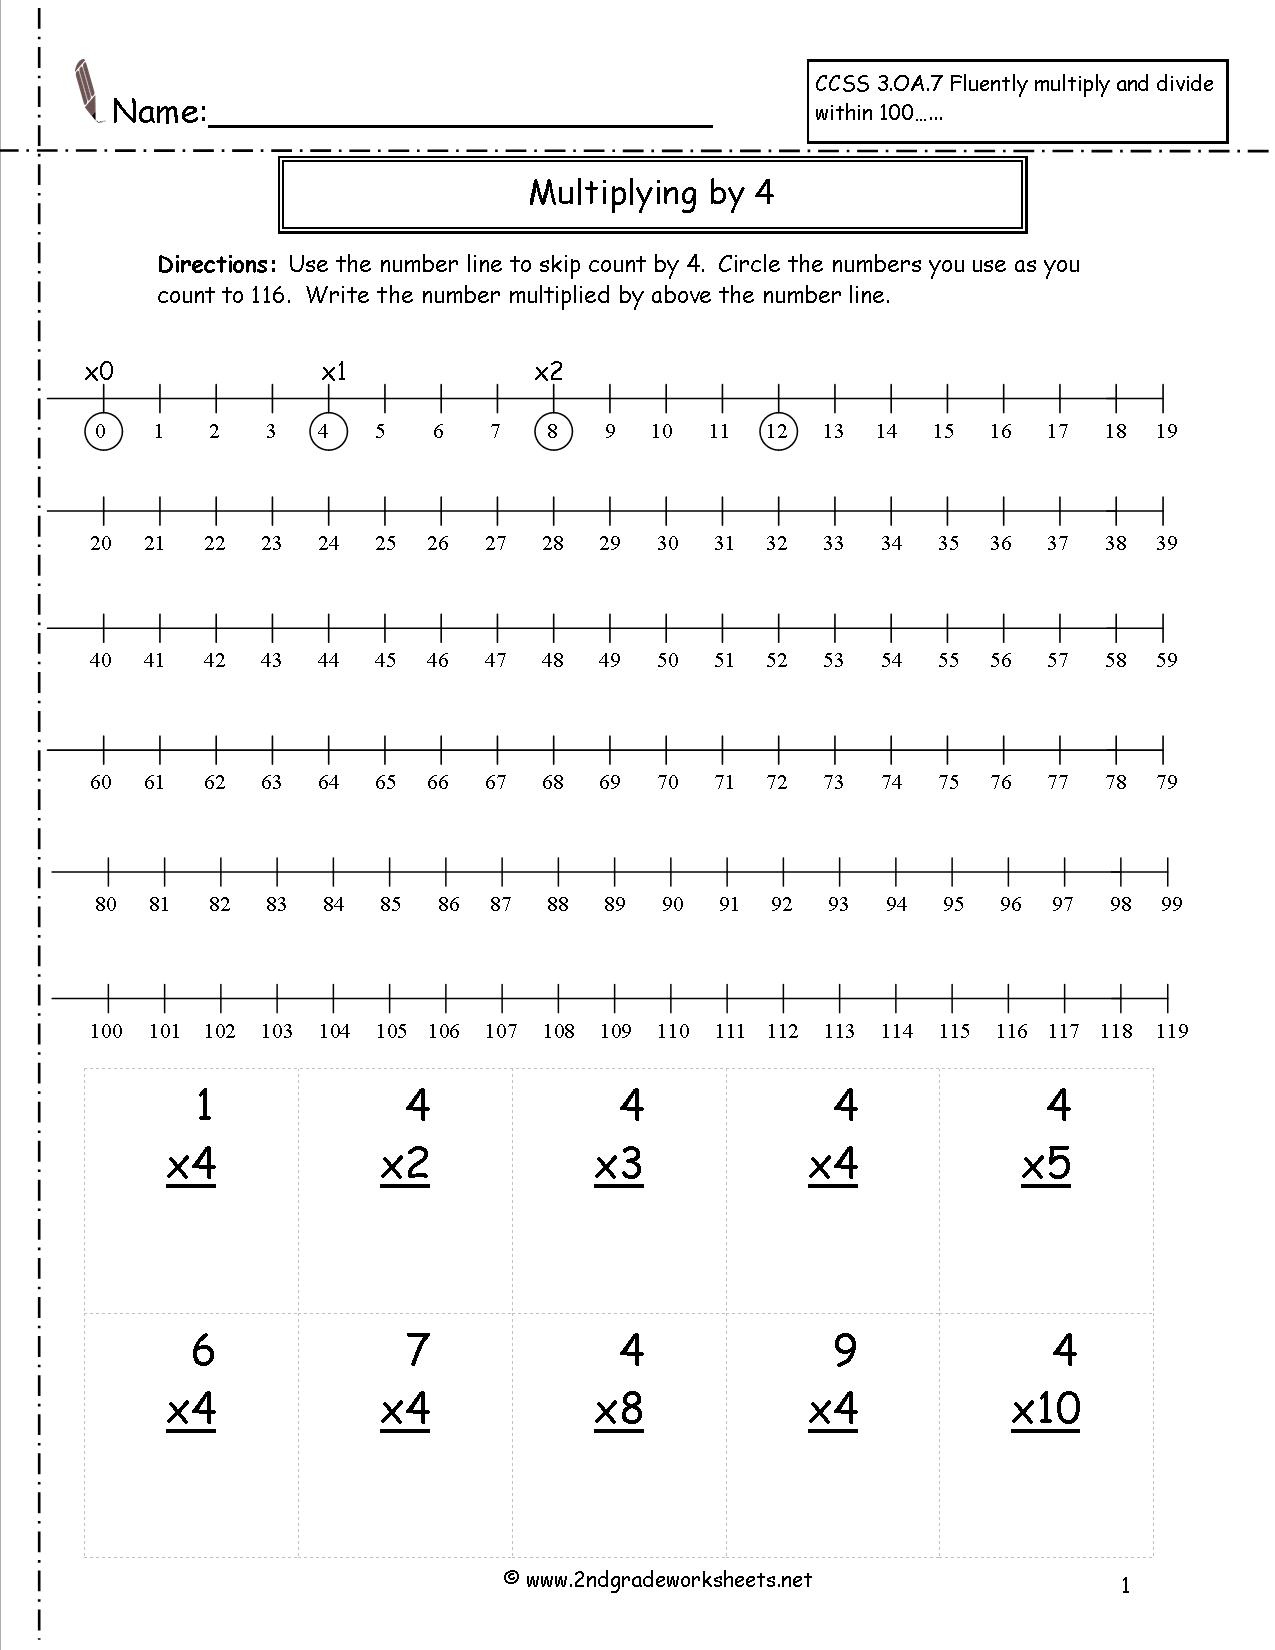 number-line-multiplication-worksheet-grade-2-multiplication-worksheets